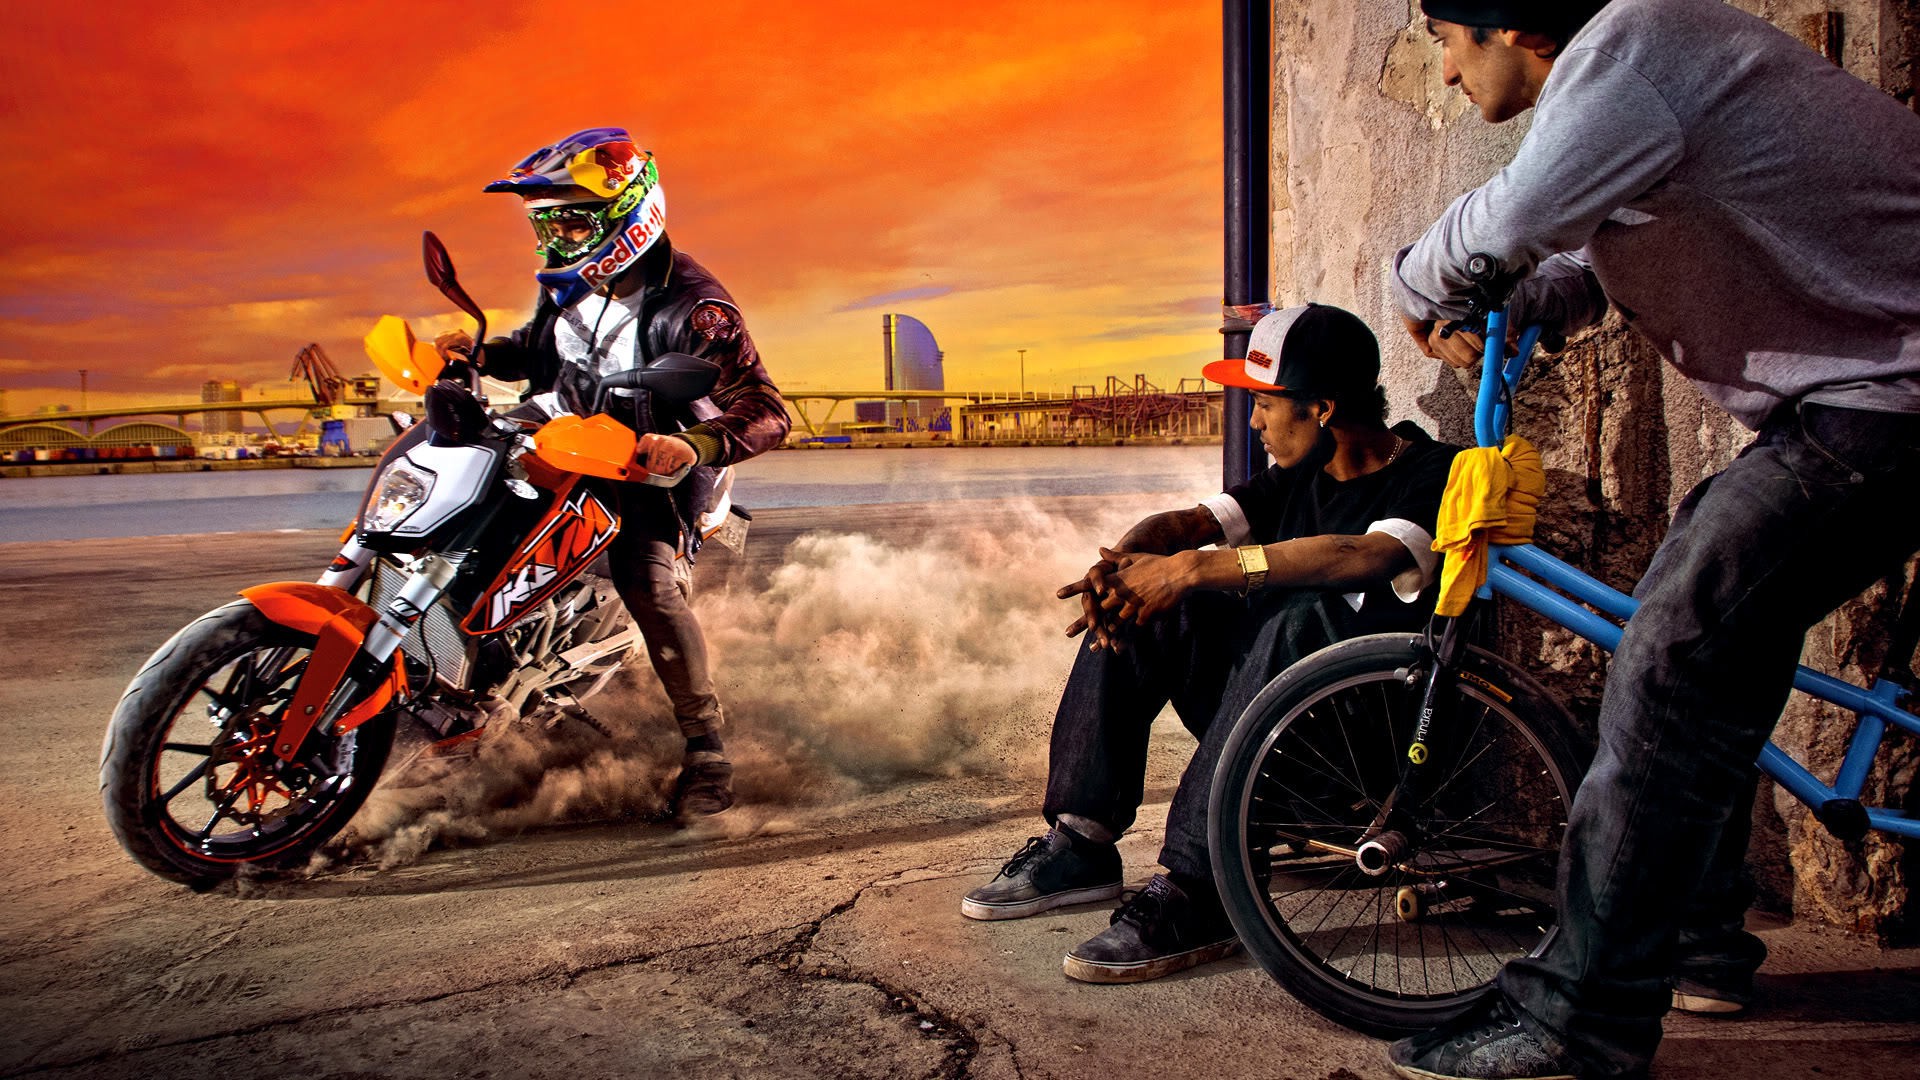 bmx wallpaper hd,motociclismo,motociclo,veicolo,esecutore di stunt,enduro